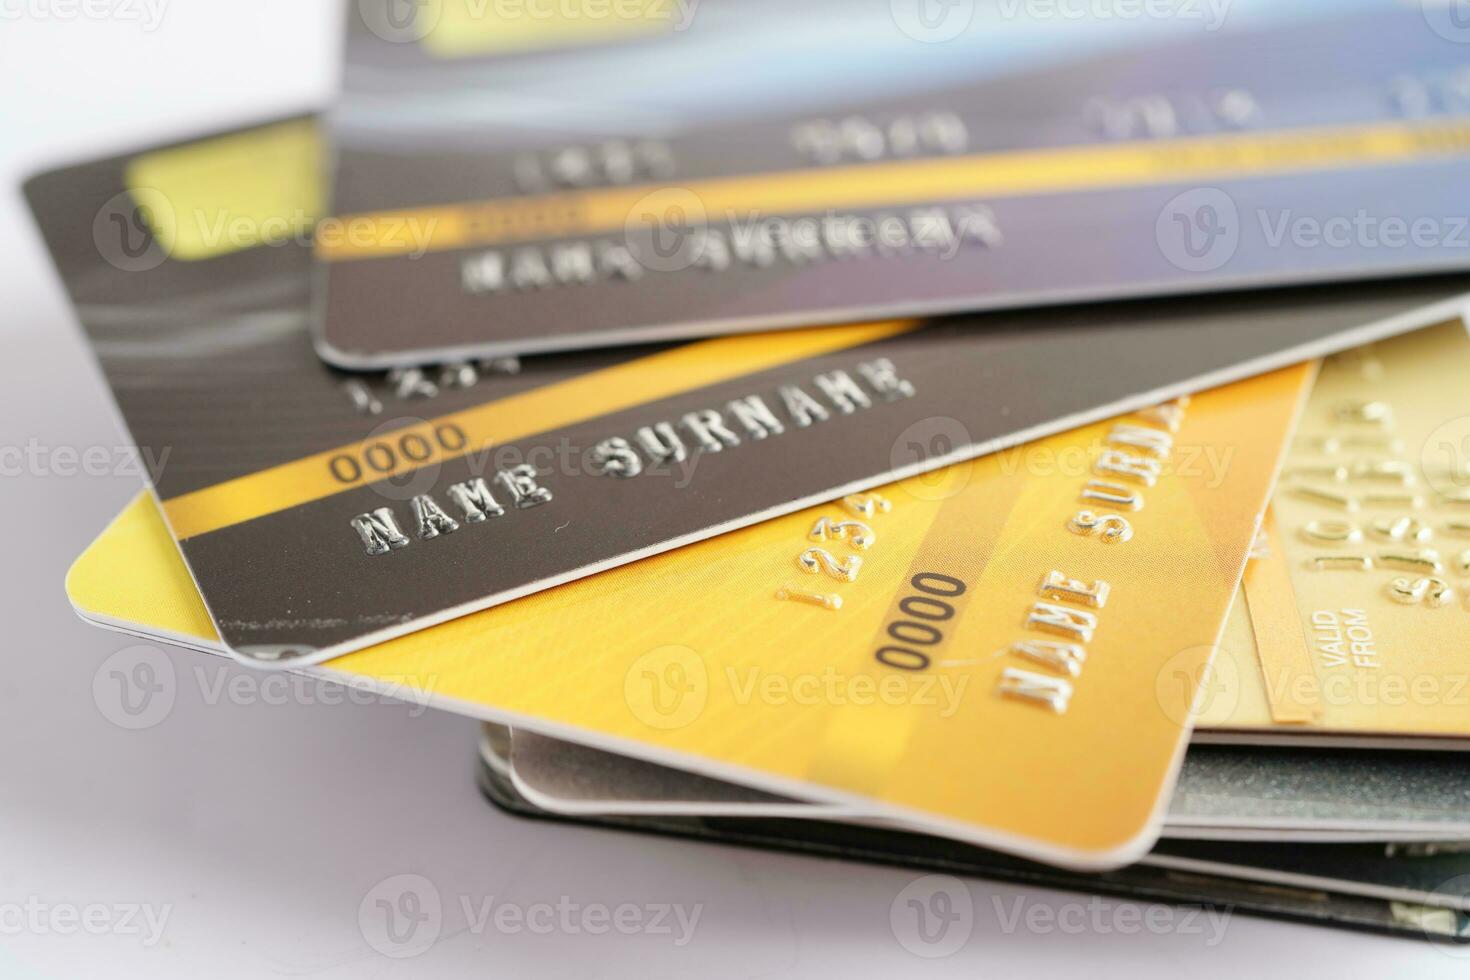 tarjeta de crédito con bloqueo de contraseña y dinero de billetes en dólares estadounidenses, concepto de negocio de finanzas de seguridad. foto